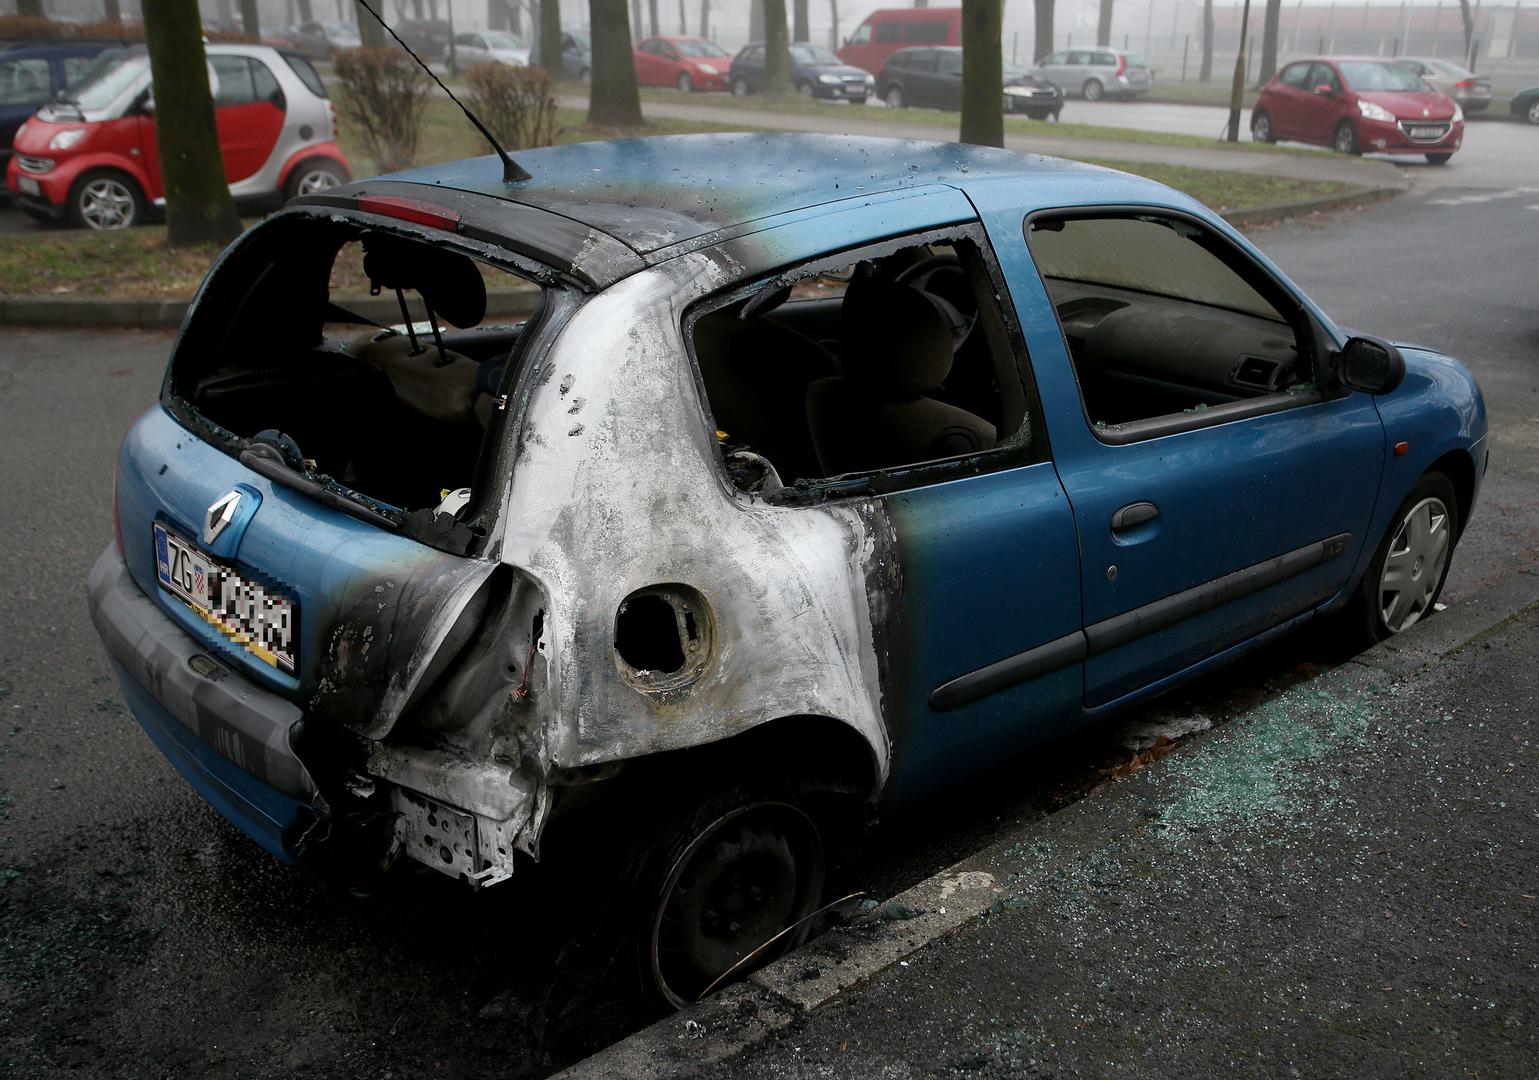  Noćas oko 5 sati ujutro izgorio je Renault Clio u ulici Božidara Magovca u zagrebačkom naselju Travno.  